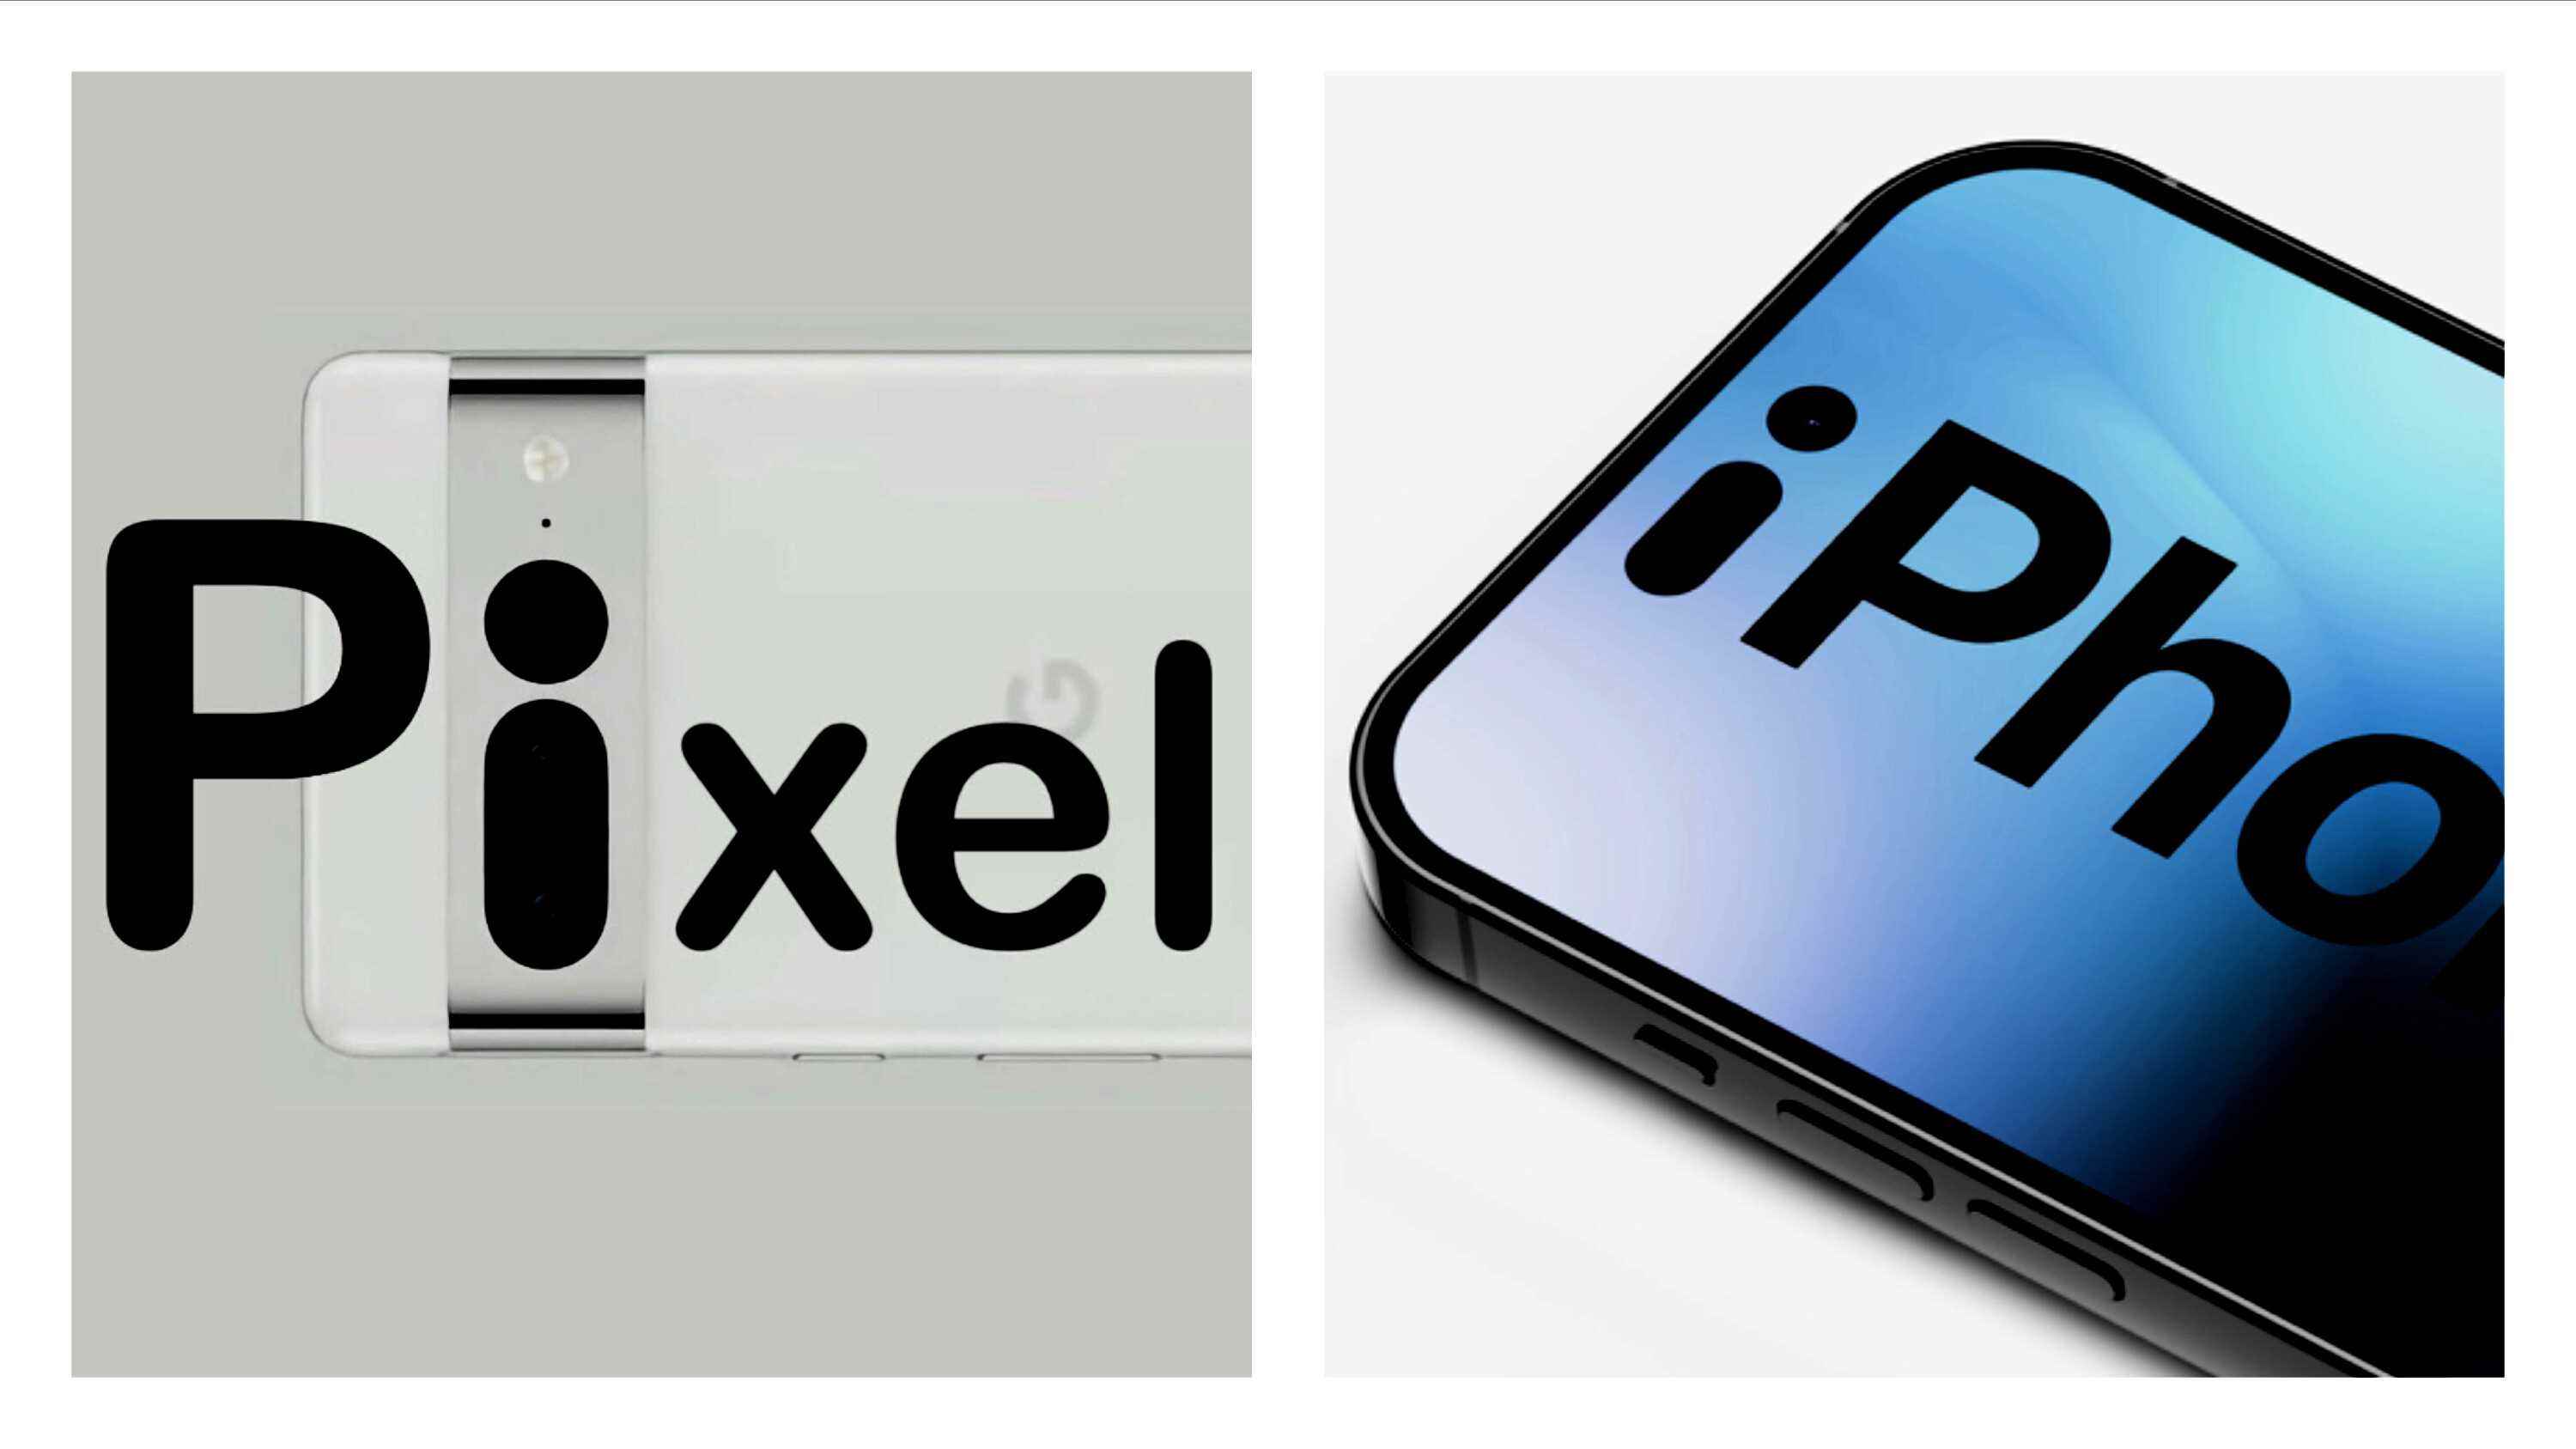 Erschreckend ähnliche Designs von iPhone 14 Pro und Pixel 7 Pro kein Zufall: Kopiert Google Apple?